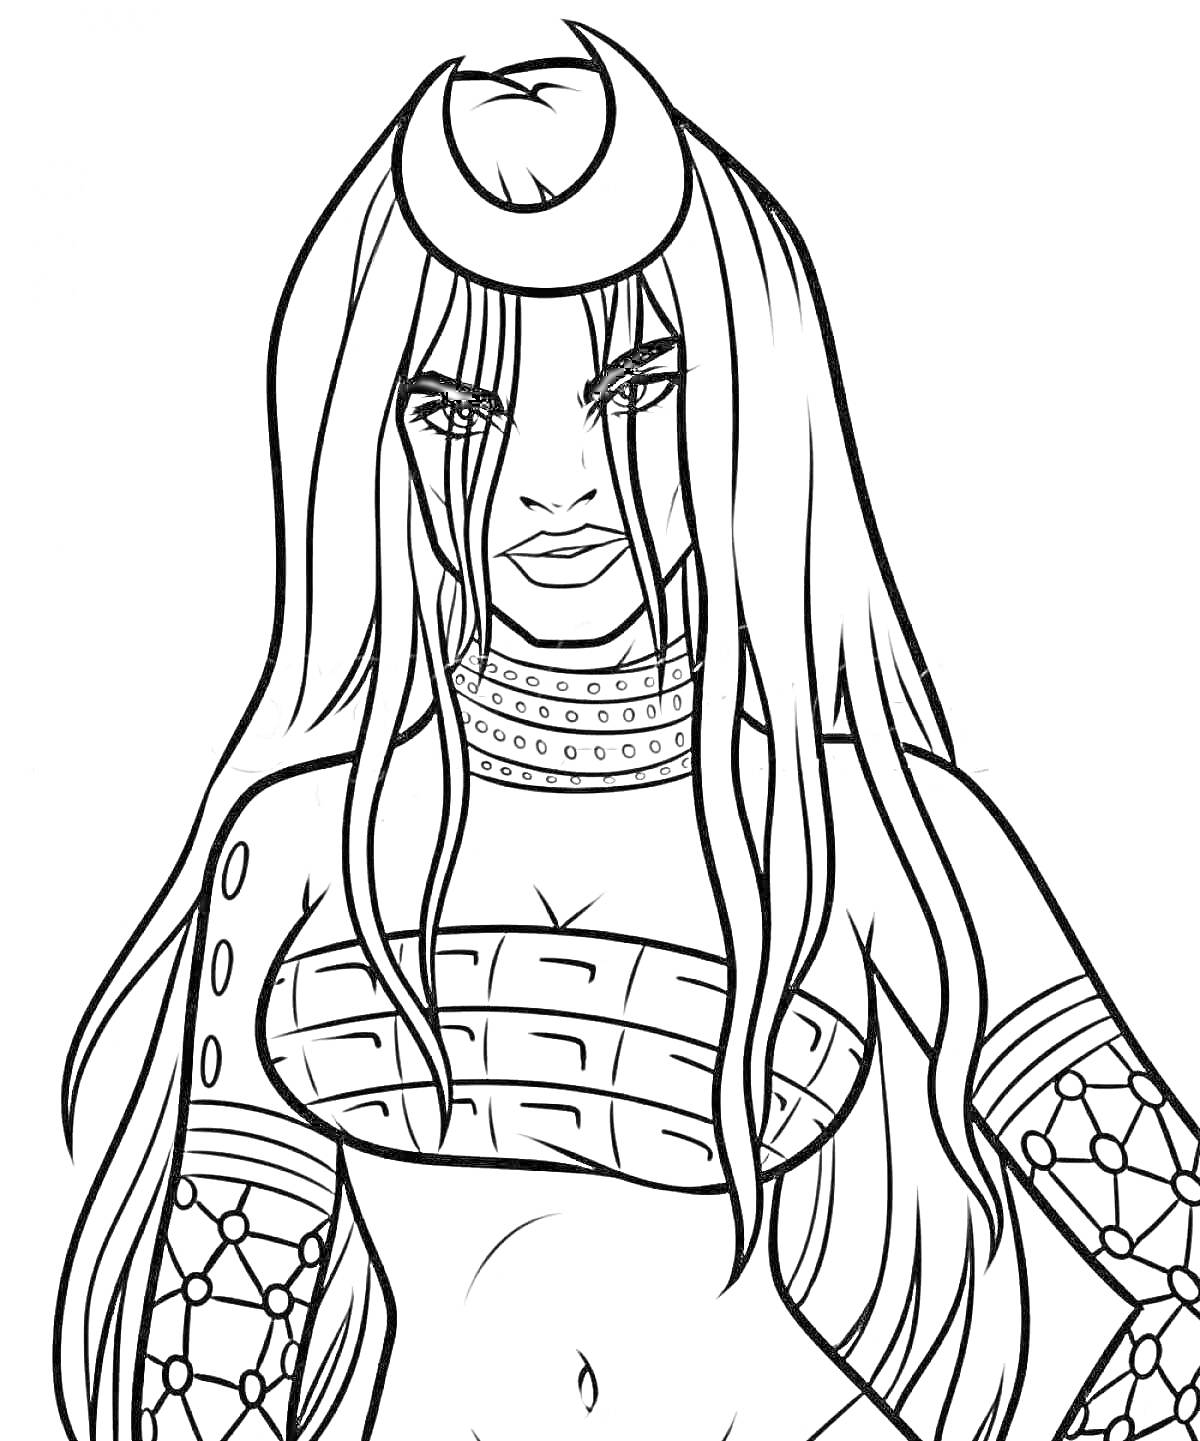 Раскраска Женщина с длинными волосами, в бра, с луной на лбу и татуировками на руках